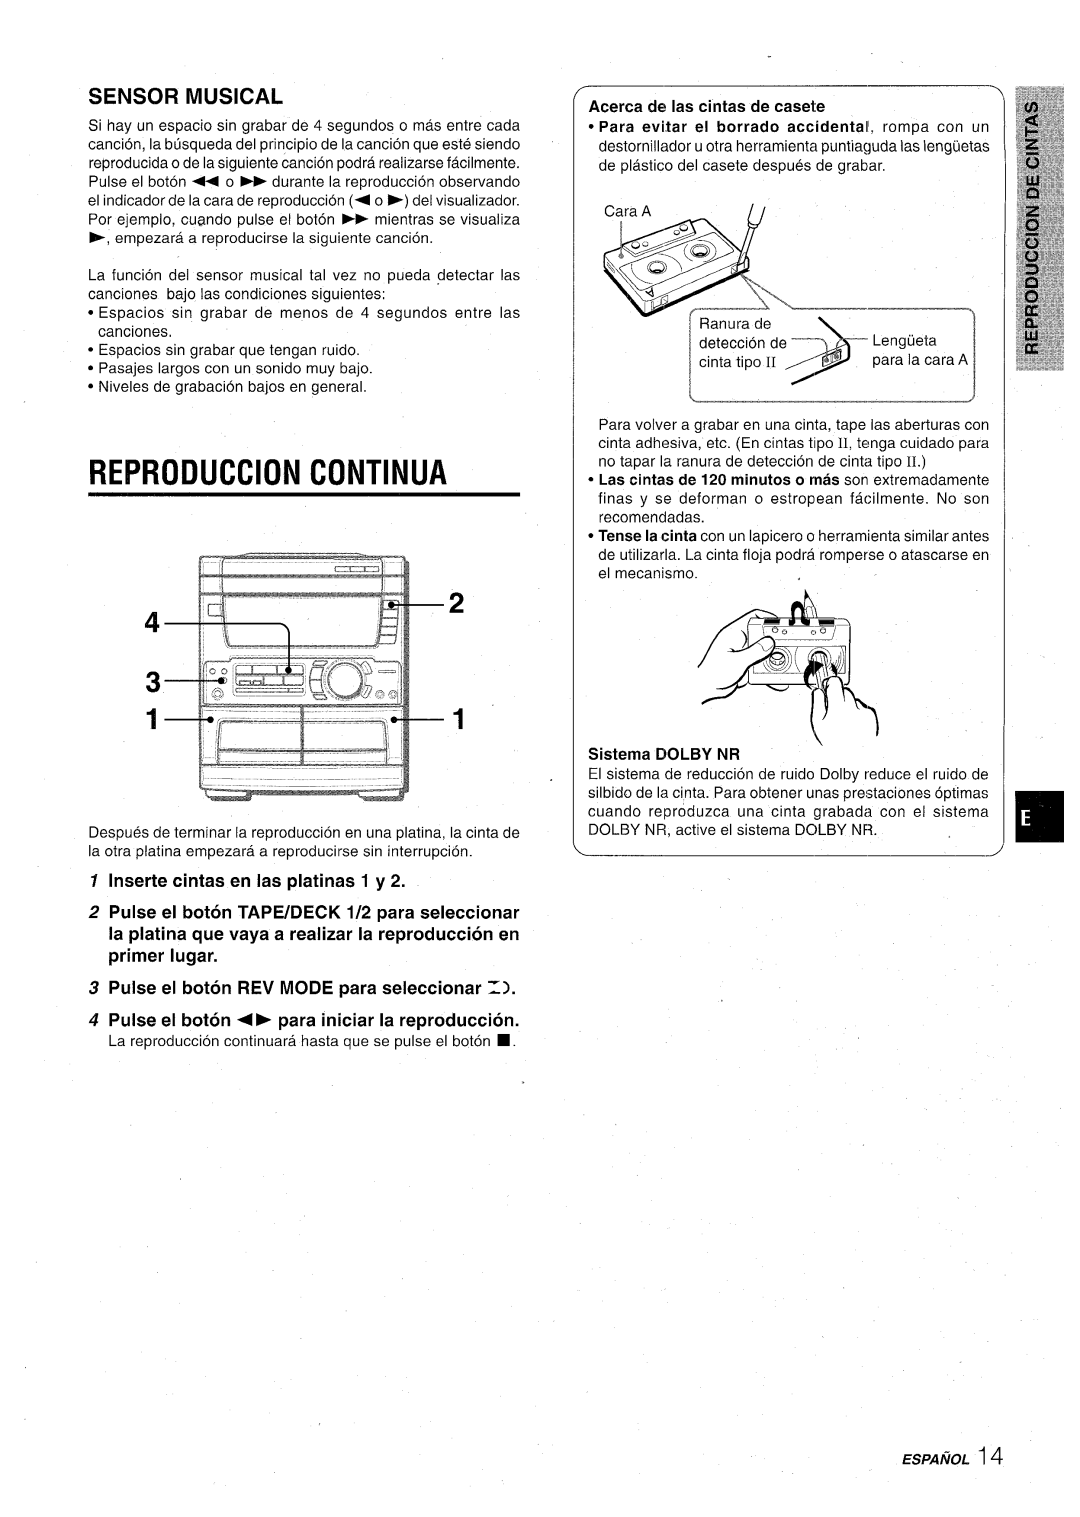 Aiwa CX-NA71 Reproduction Continua, Sensor Musical, Inserte cintas en Ias platinas 1 y, Acerca de Ias cintas de casele 